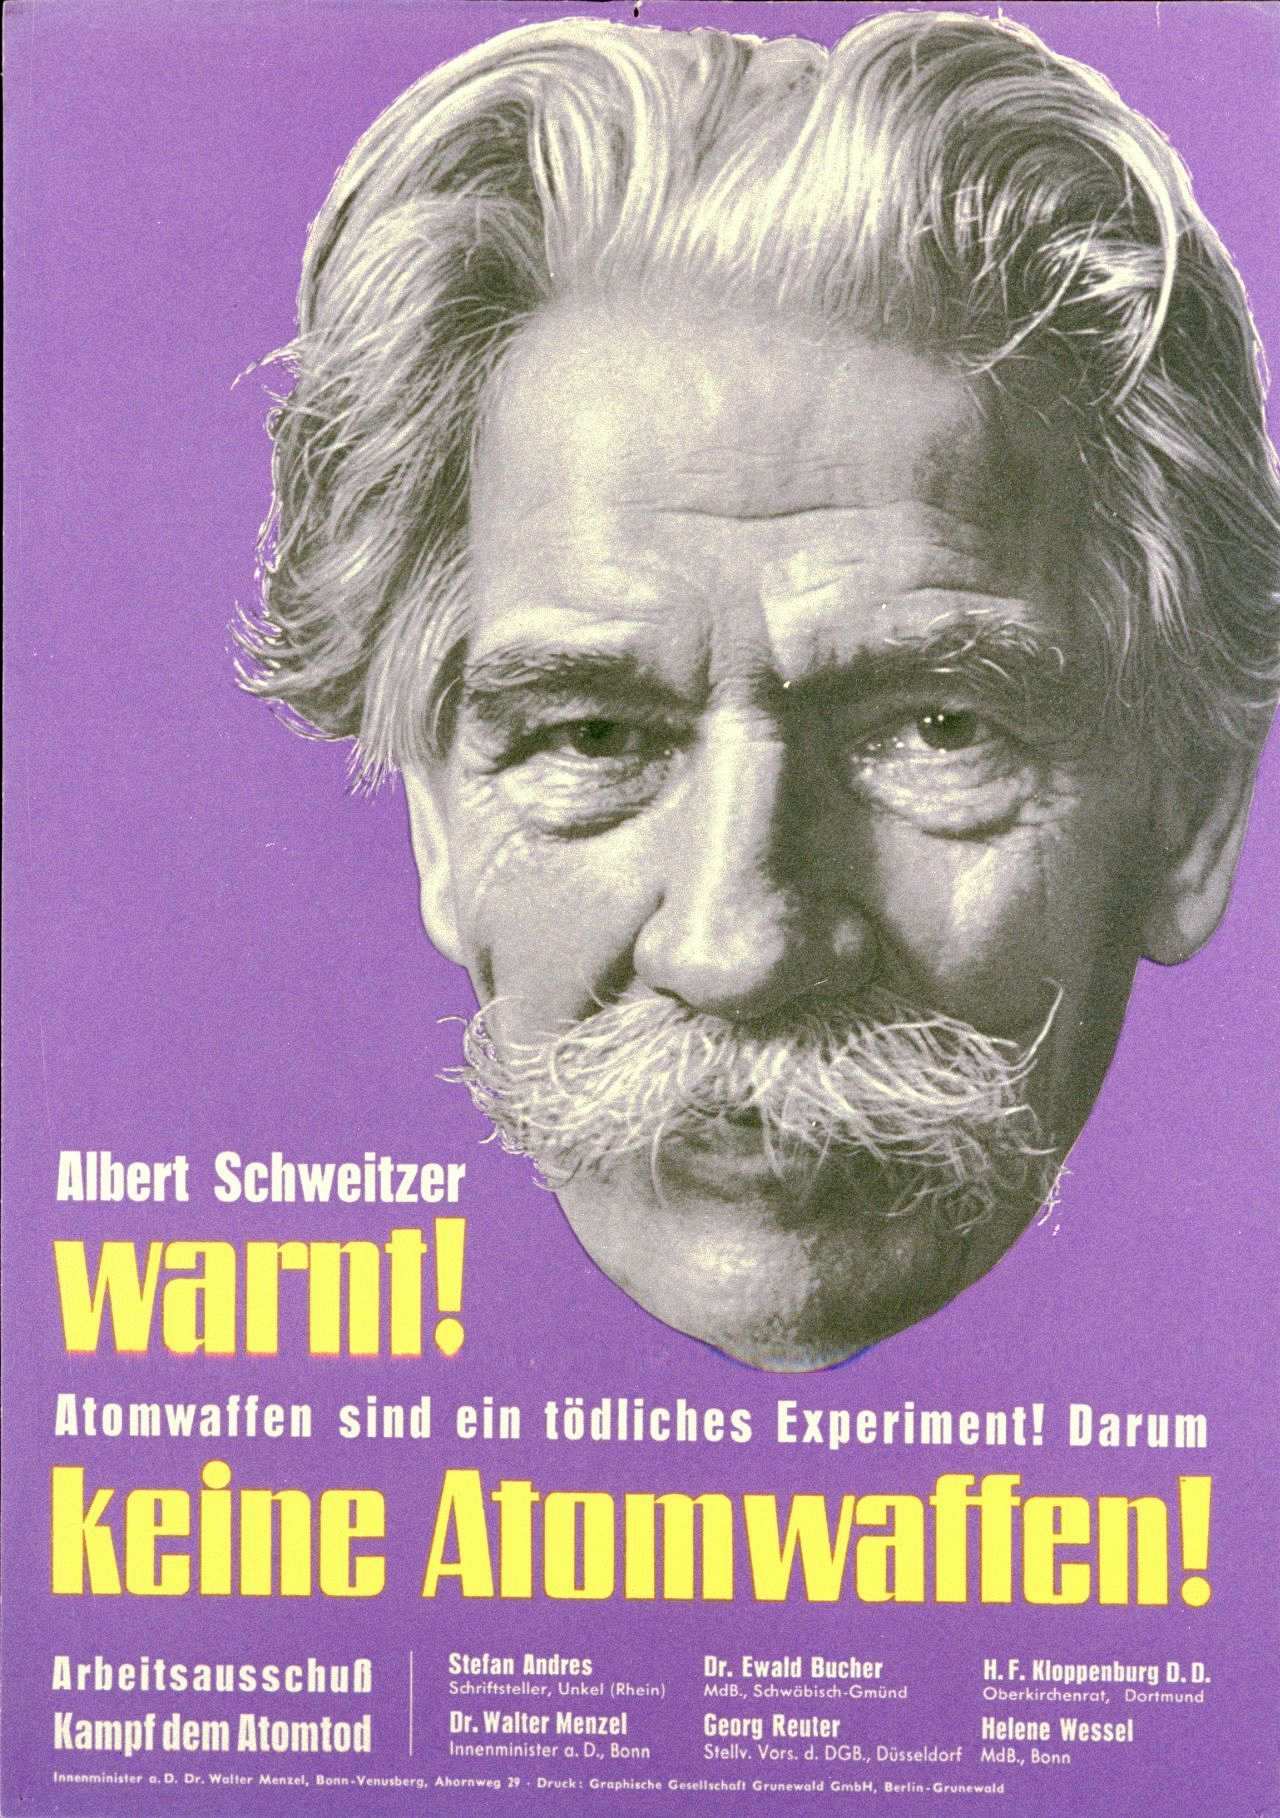 Lilafarbenes Plakat mit schwarz-weißer Porträt-Abbildung Albert Schweitzers, Schriftzug drunter 'Albert Schweitzer warnt! Atomwaffen sind ein tödliches Experiment! Darum keine Atomwaffen! Arbeitsausschuß Kampf dem Atomtod'. Unten Aufzählung der Mitglieder.